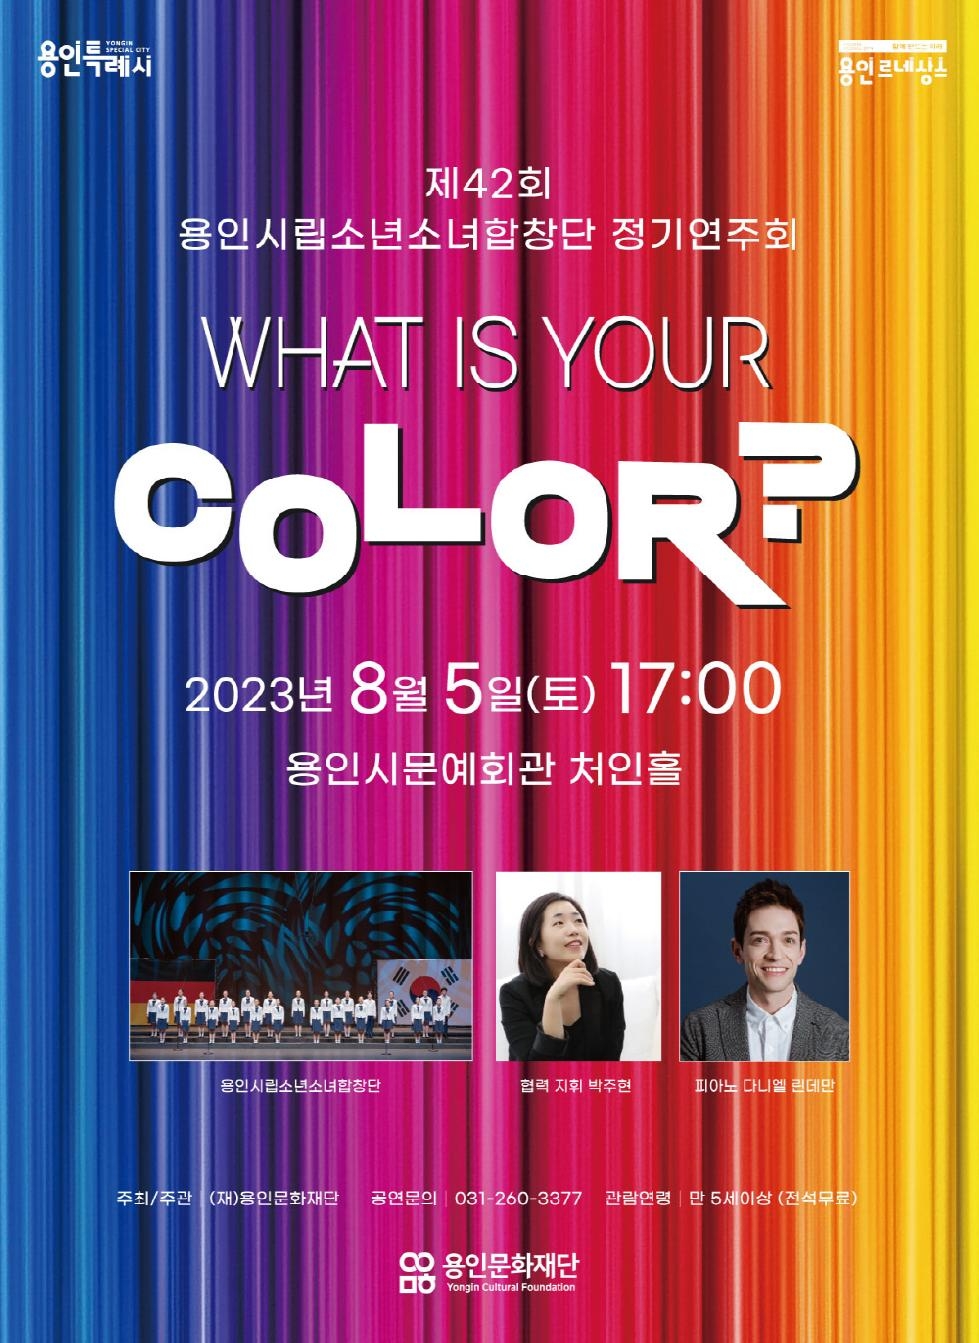 용인시립소년소녀합창단 제42회 정기연주회 ‘What is your Color?’ 개최